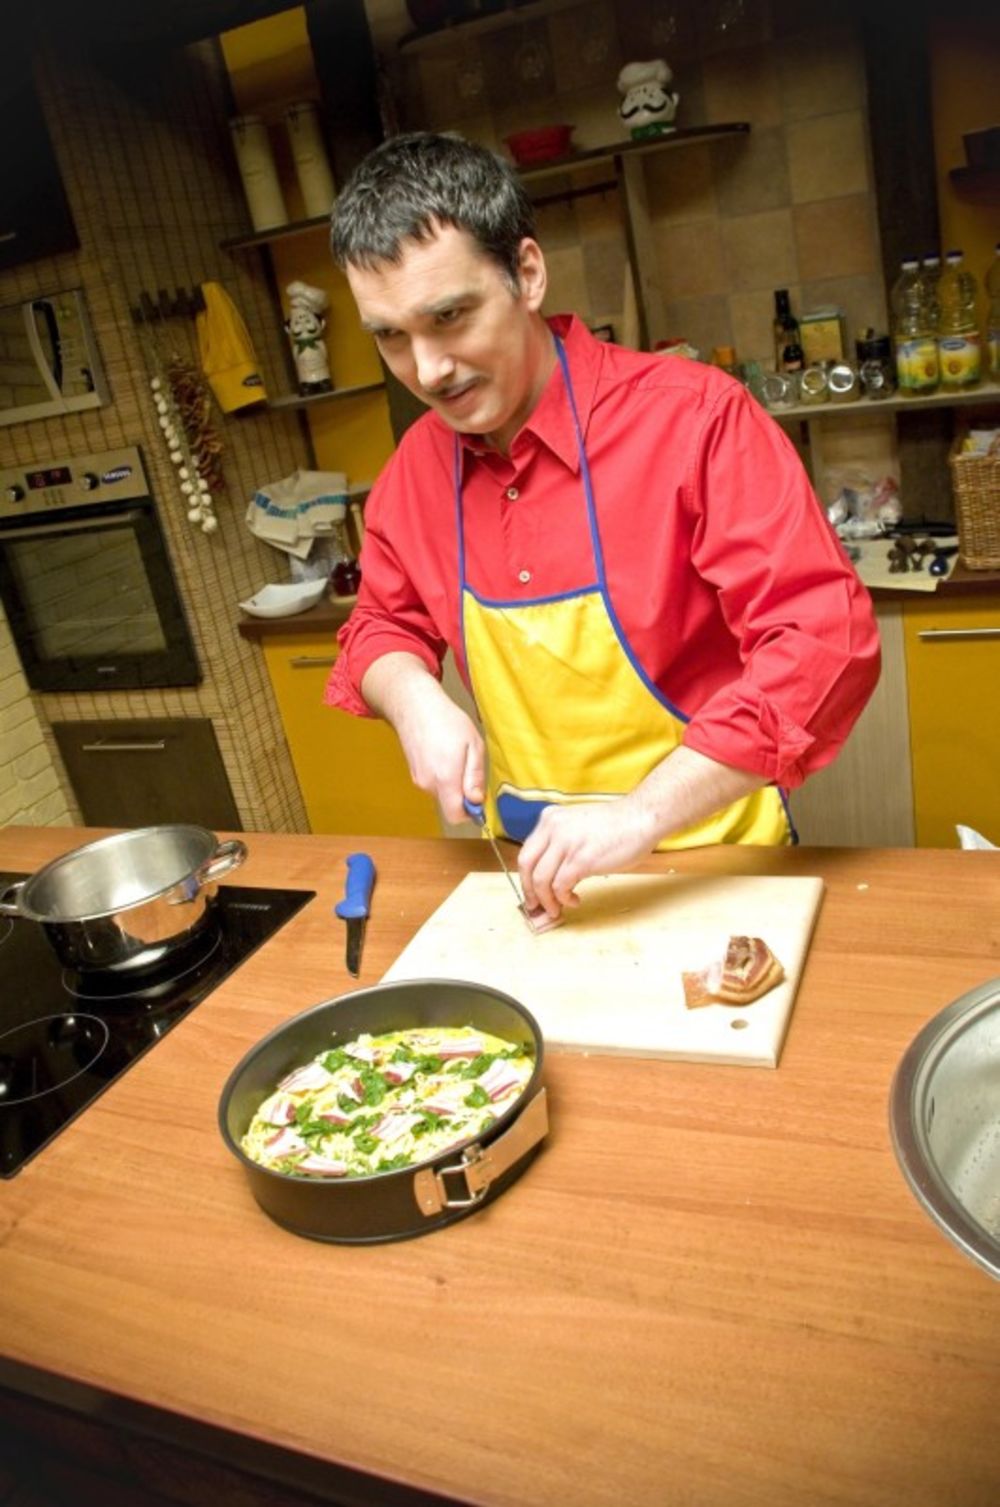 Nova kulinarska emisija Gastronomad počeće da se emituje na Prvom programu RTS-a nedeljom od 4. aprila u terminu od 14:45